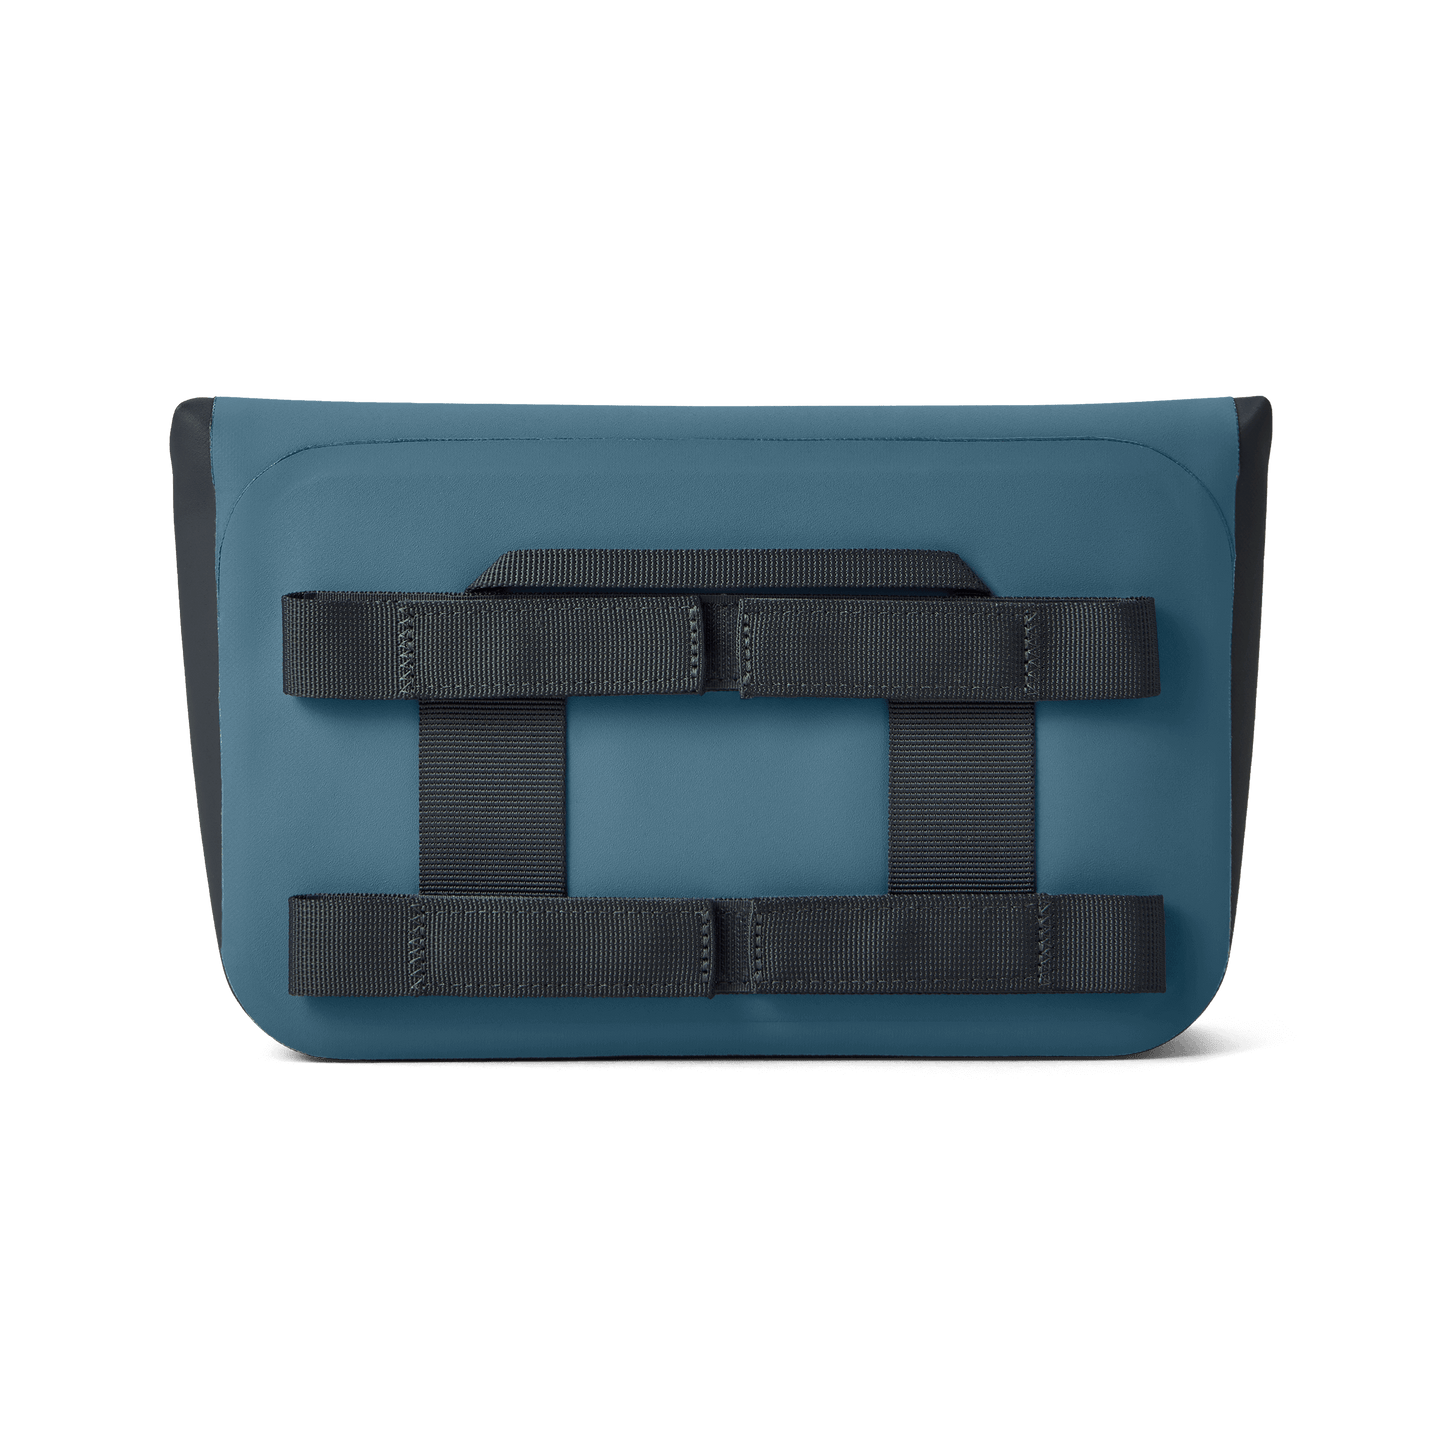 YETI Sidekick Dry® Gear Case Nordic Blue